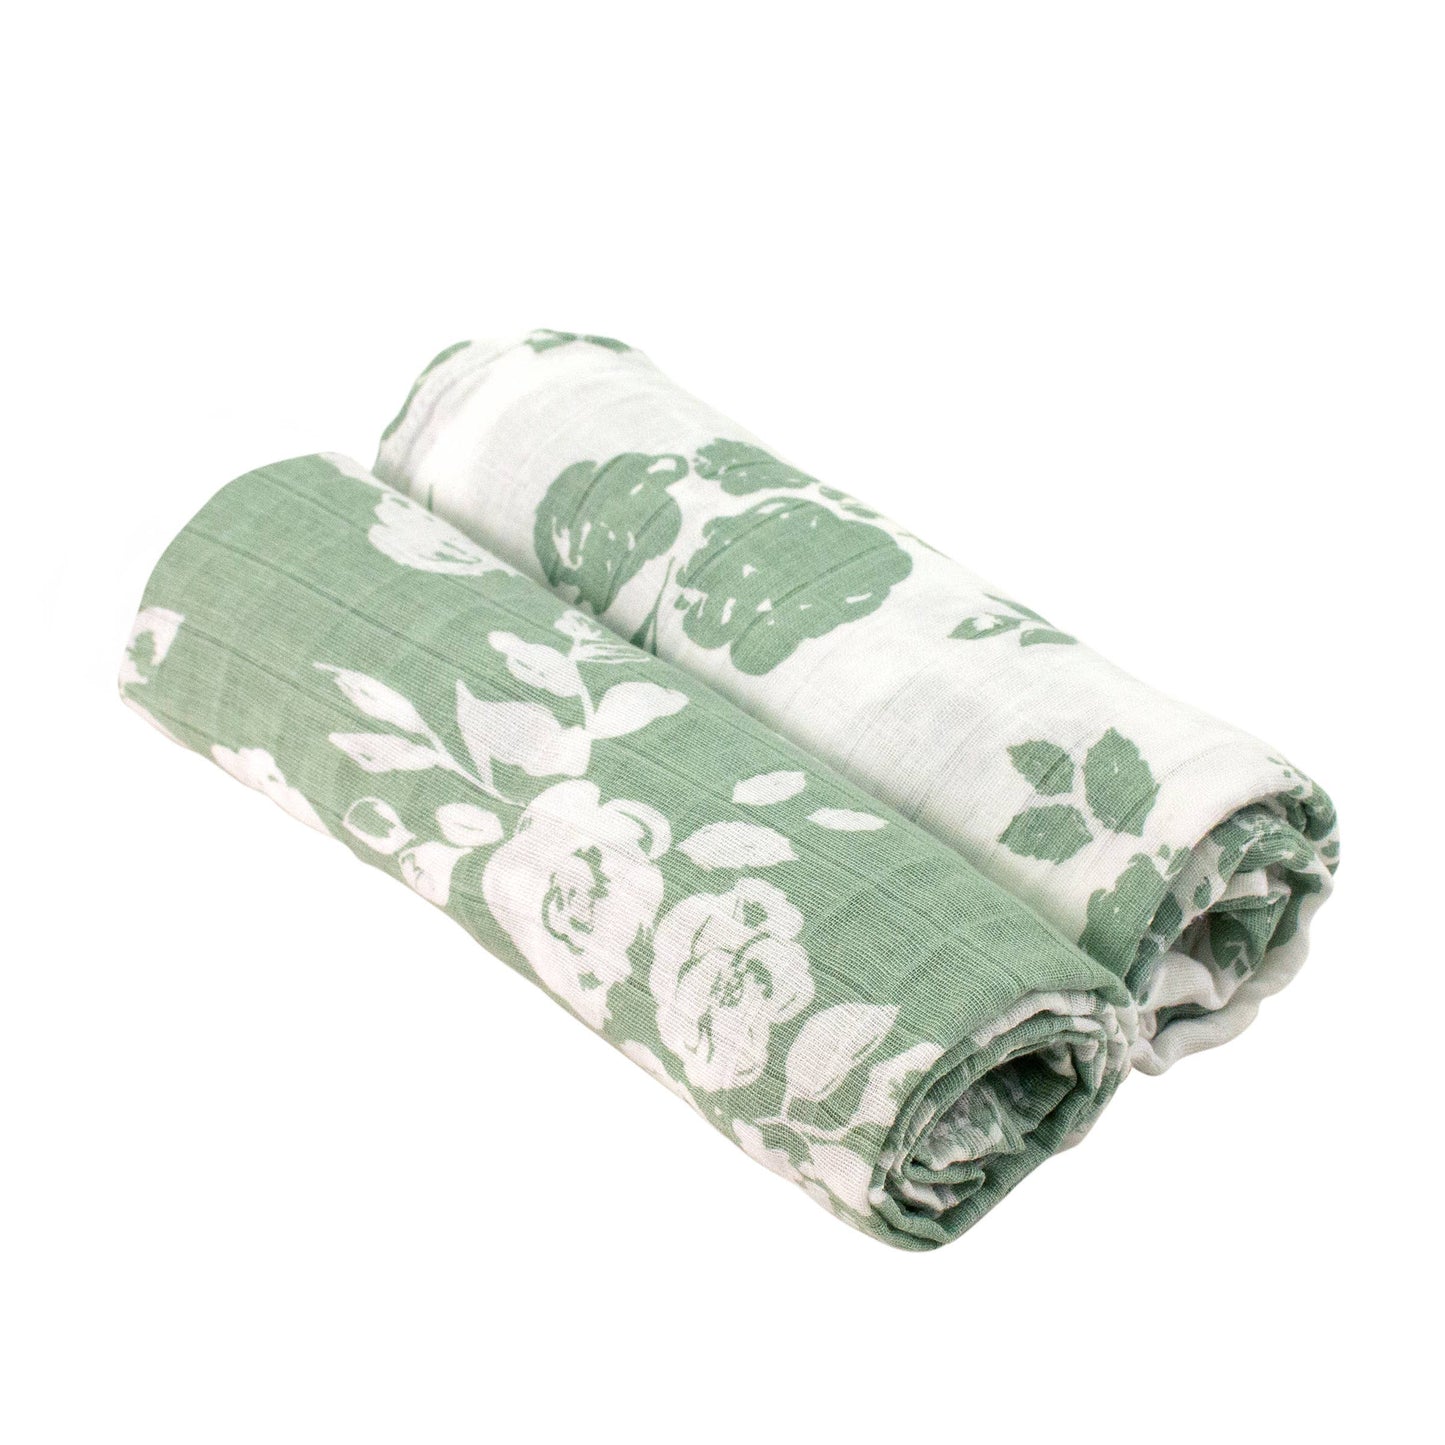 Vintage + Modern Floral Classic Muslin Swaddle Blanket Set